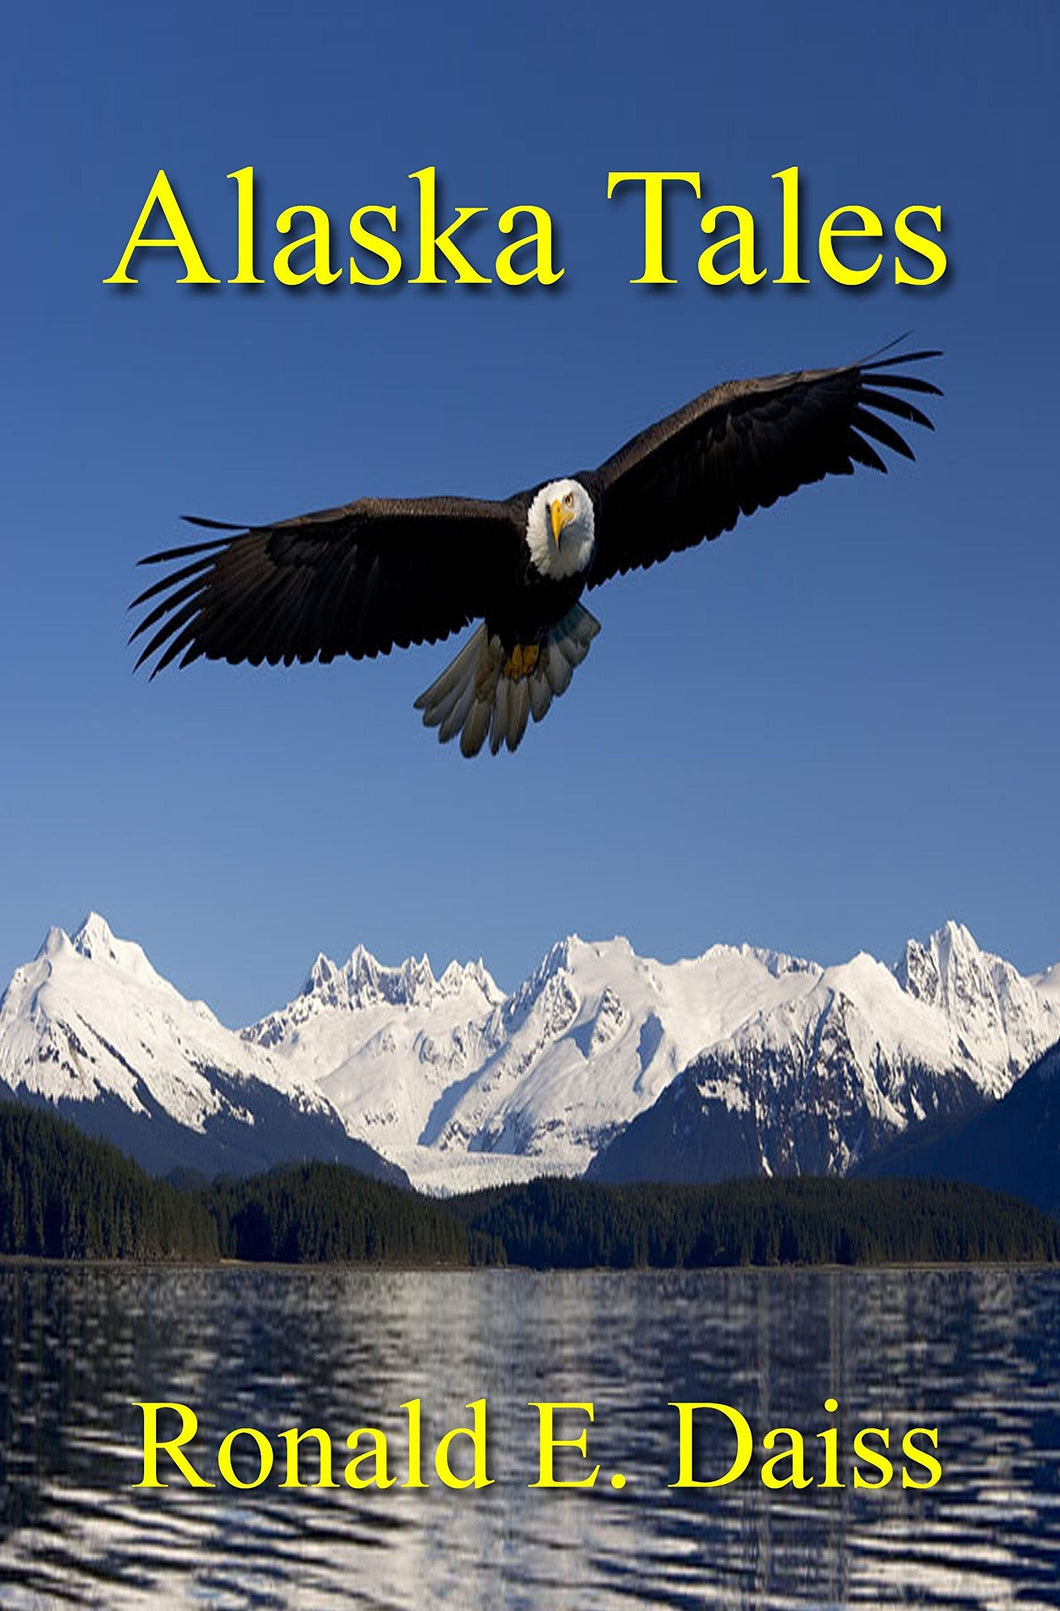 Alaska Tales - Starry Night Publishing